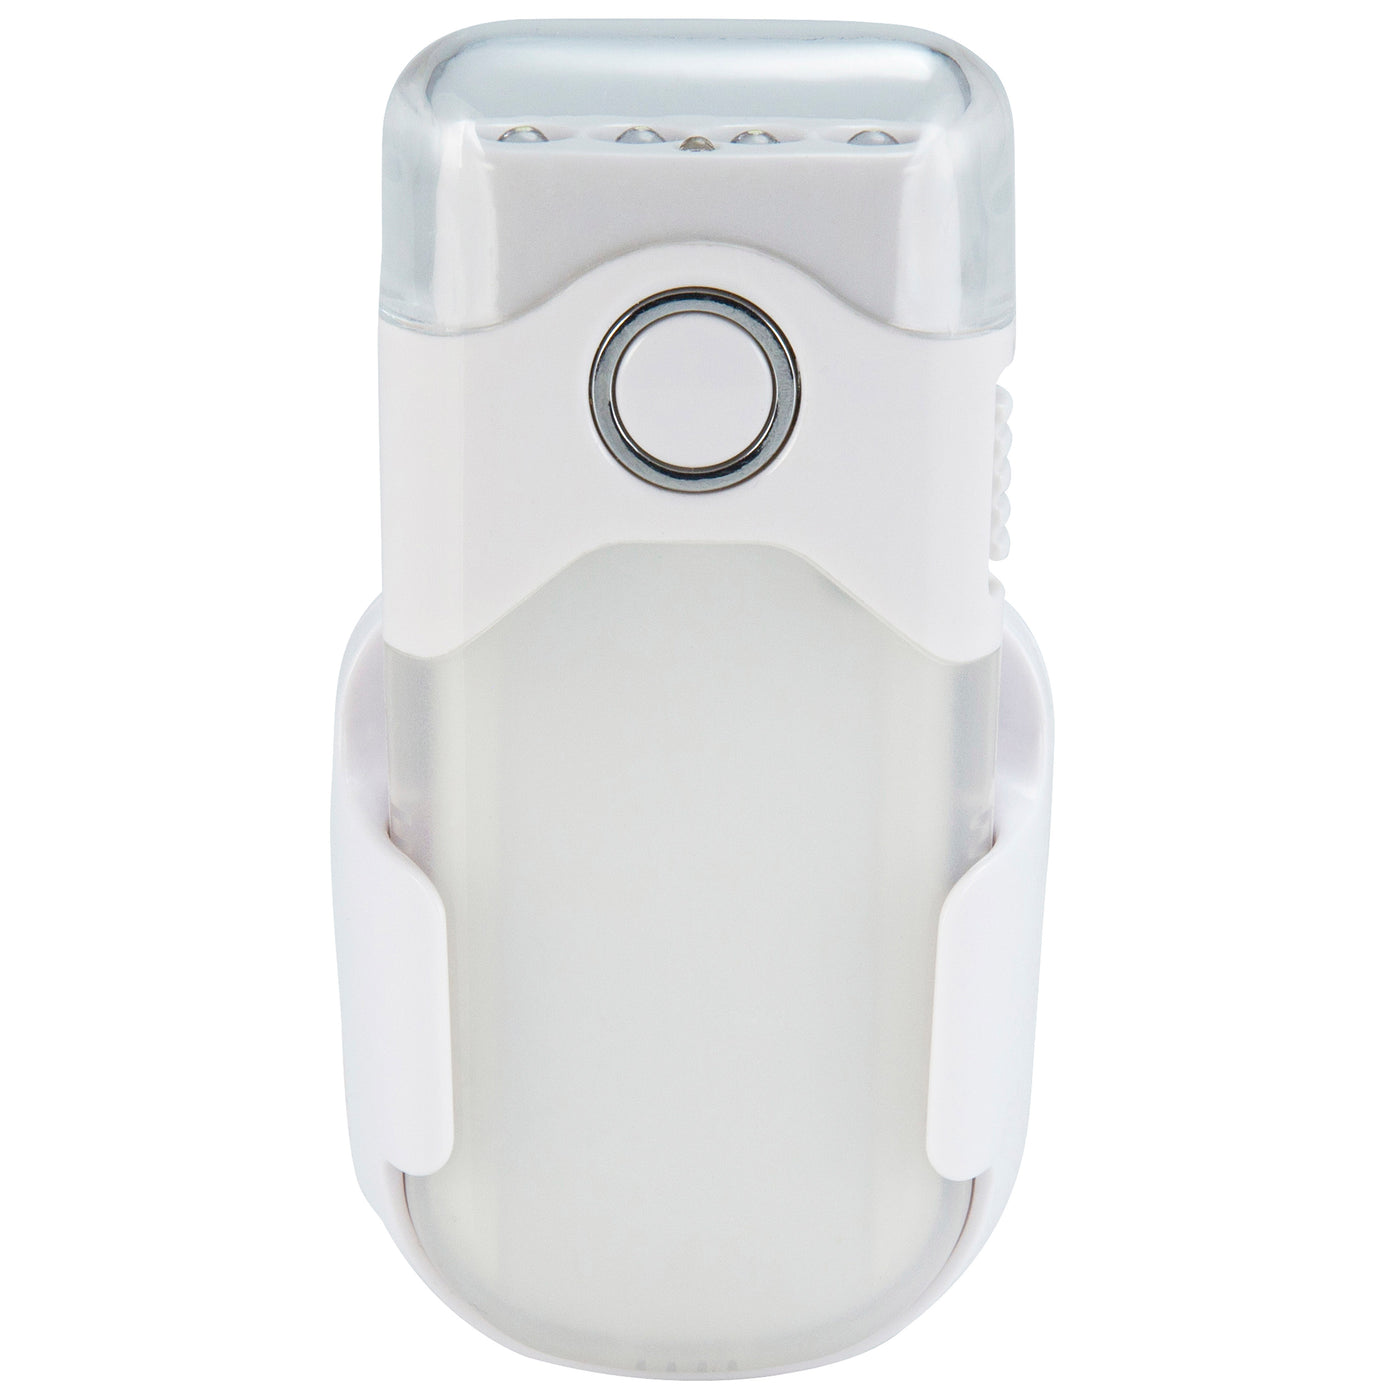 Alecto ATL-80 - Lampe de poche LED rechargeable / veilleuse LED automatique, blanc